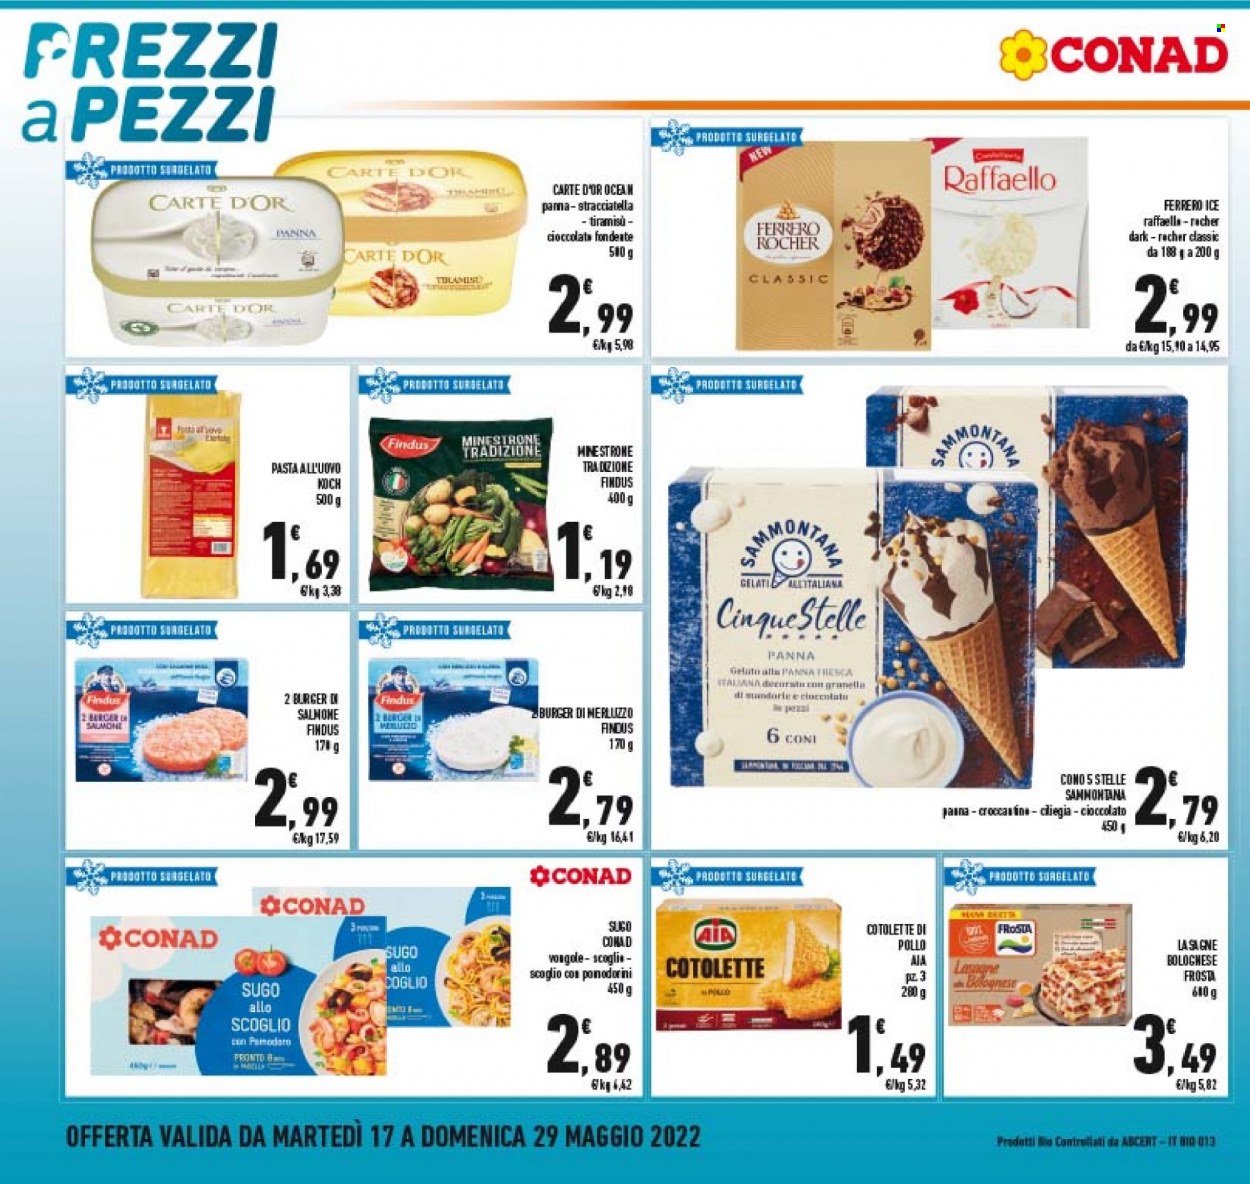 thumbnail - Volantino Conad - 17/5/2022 - 29/5/2022 - Prodotti in offerta - Carte d'Or, cotolette, AIA, hamburger, Findus, Frosta, minestrone, sugo, lasagne, gelato, Ferrero Rocher, Ferrero, pasta all'uovo. Pagina 20.